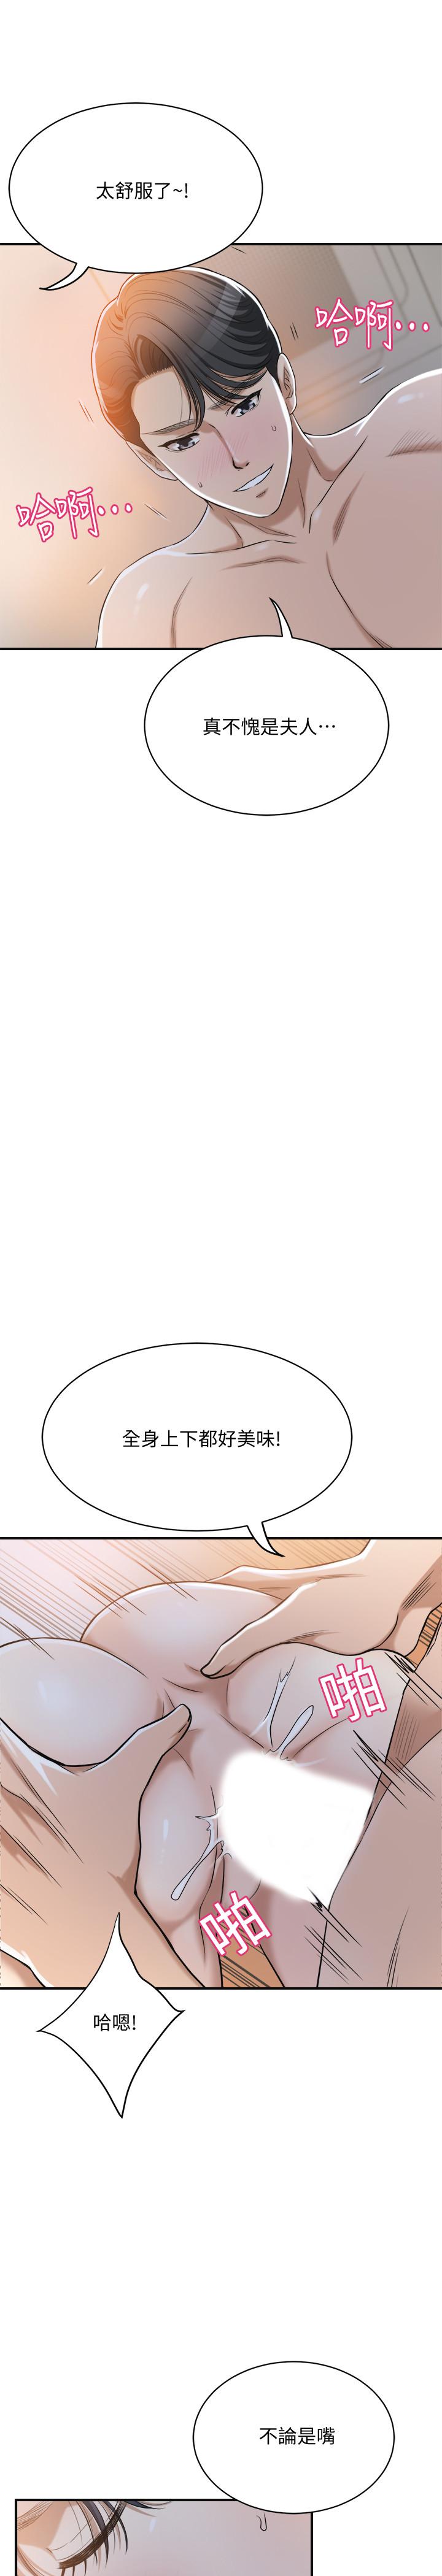 抑欲人妻漫画 免费阅读 第23话-疯狂抽插筱妍的诱人胴体 11.jpg